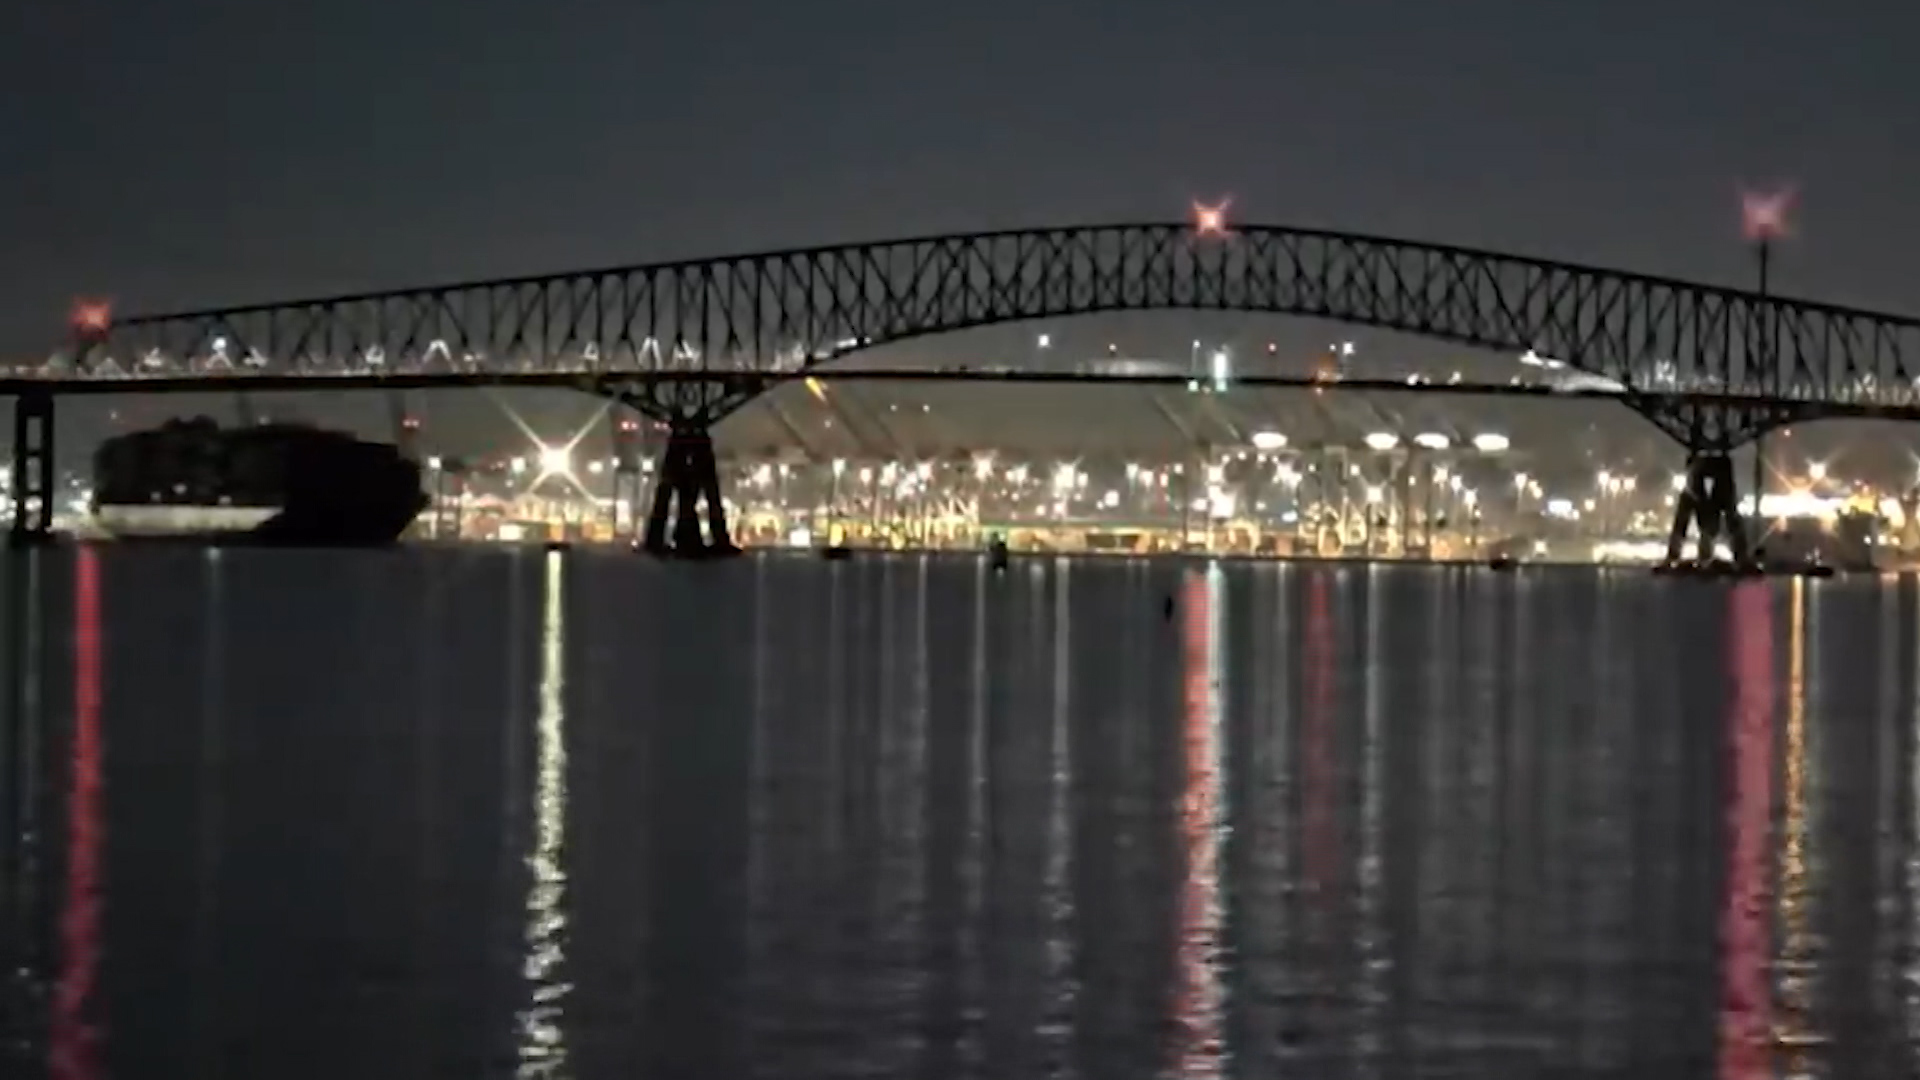 SHBA/ Anija shembi urën në Baltimore, kërkohen 6 punëtorë në lumë